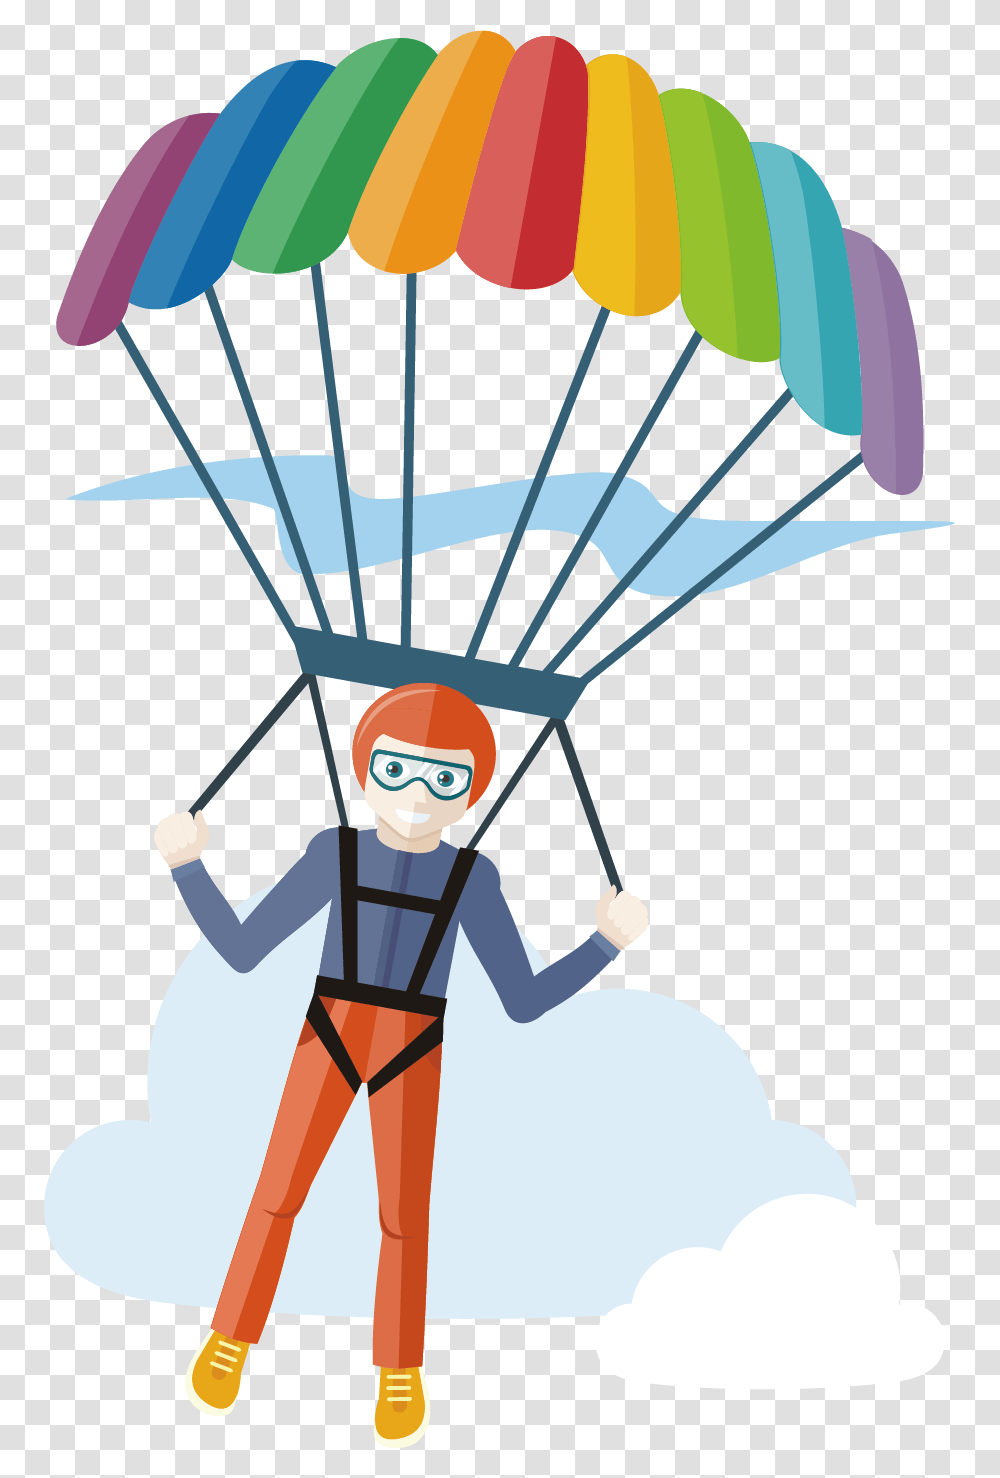 Parachute Skydiver Clipart, Person, Human, Badminton, Sport Transparent Png